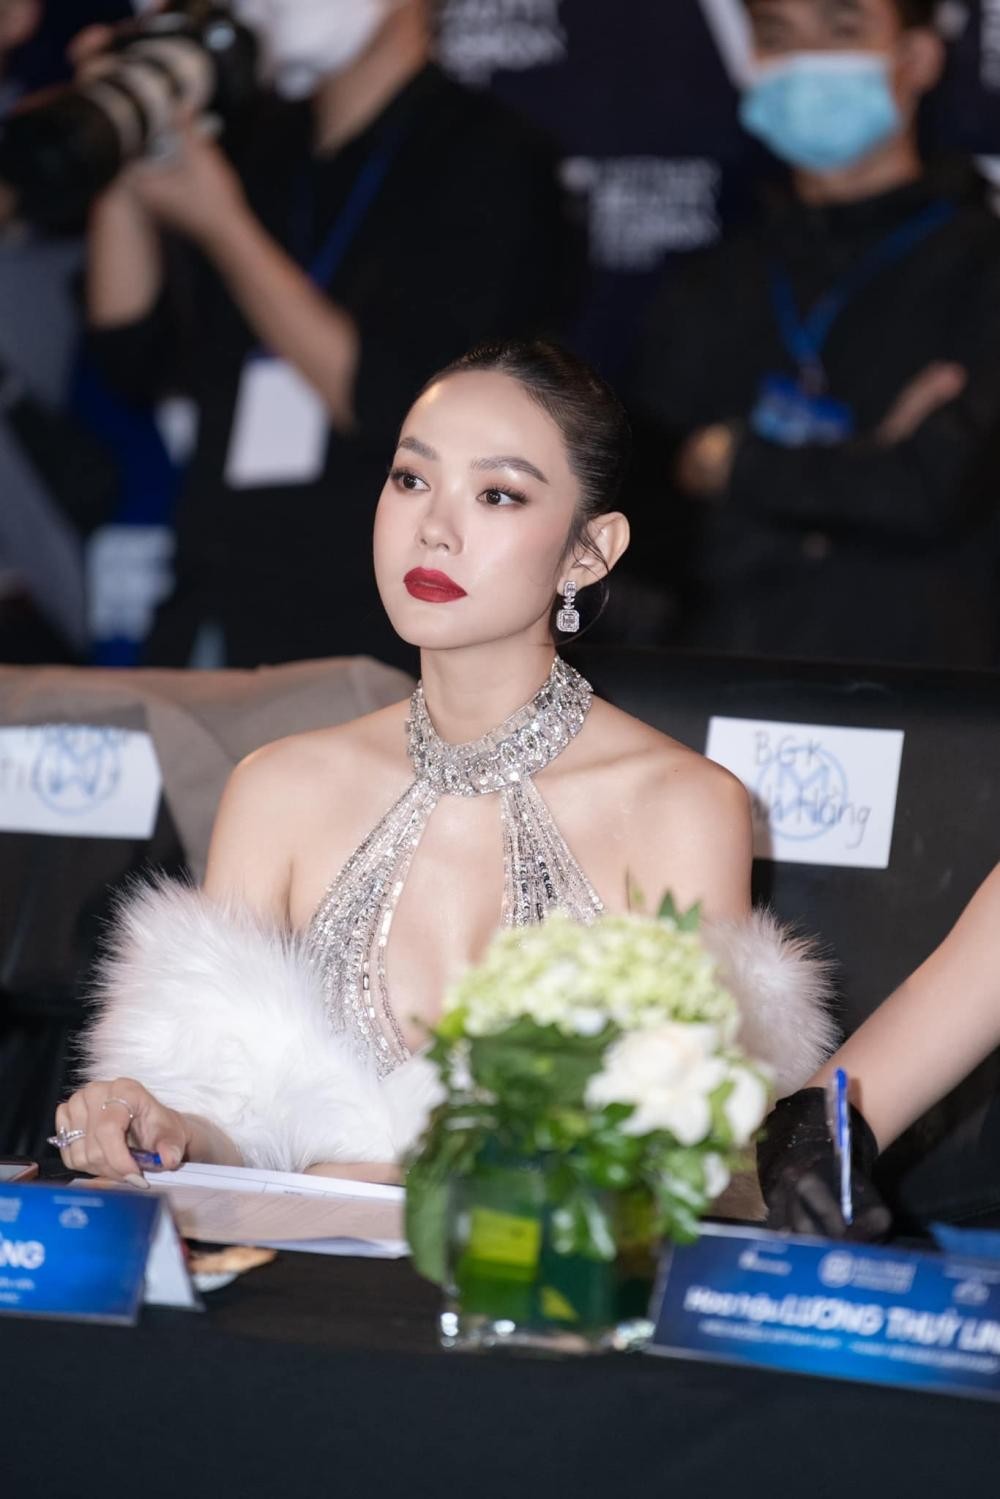 Hoa hậu Thùy Tiên, Đỗ Mỹ Linh và "cô dâu tháng 6" Minh Hằng không hẹn cùng diện mẫu đầm này ảnh 5